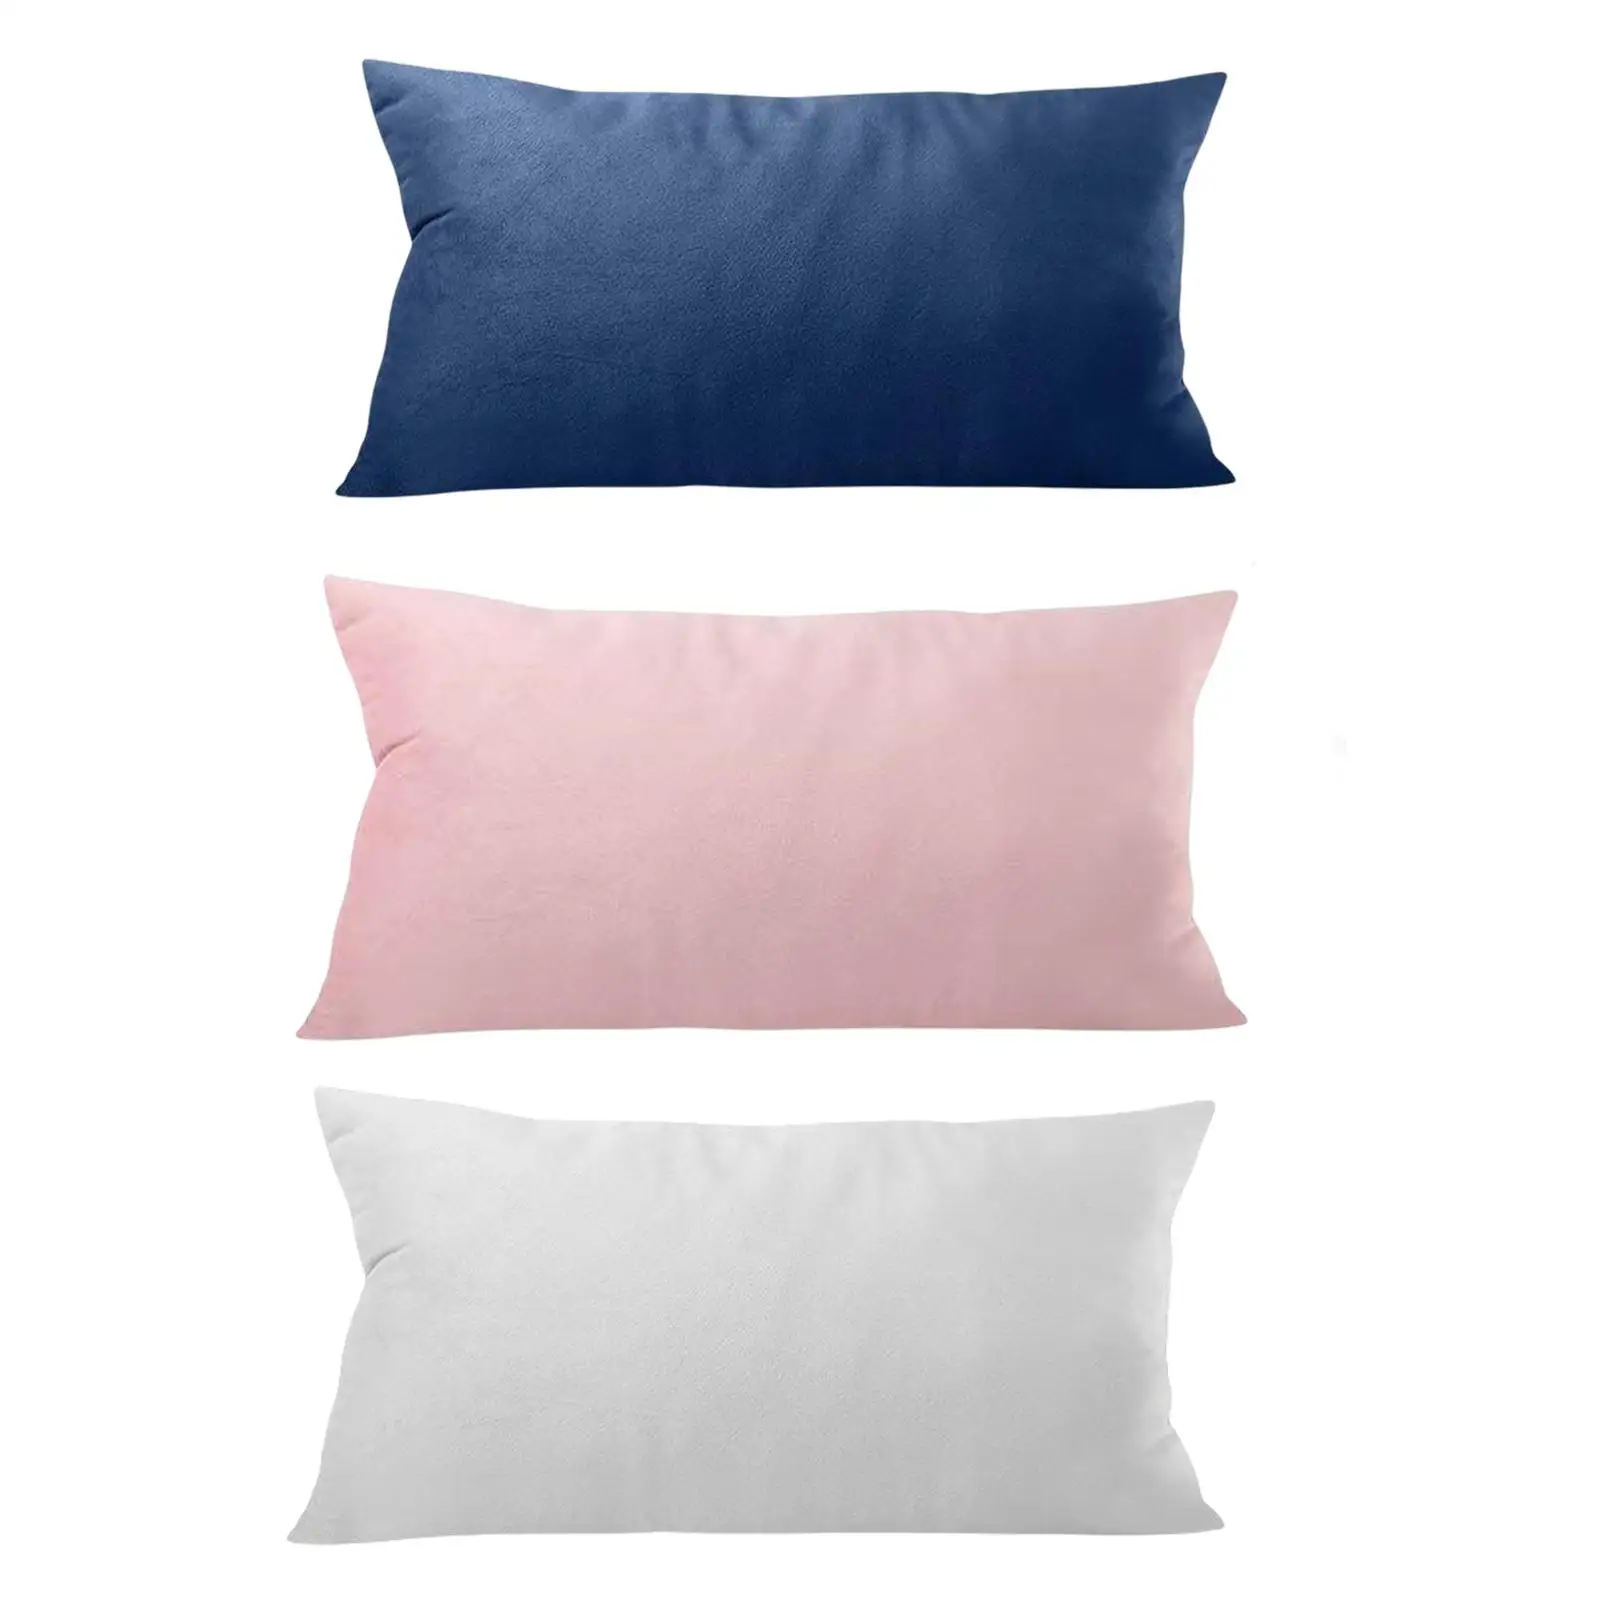 Soft Head Cushion Pillow with pillow Removable Lumbar Pillows for Folding Lounger Garden Terrace recliner Beach Headrest